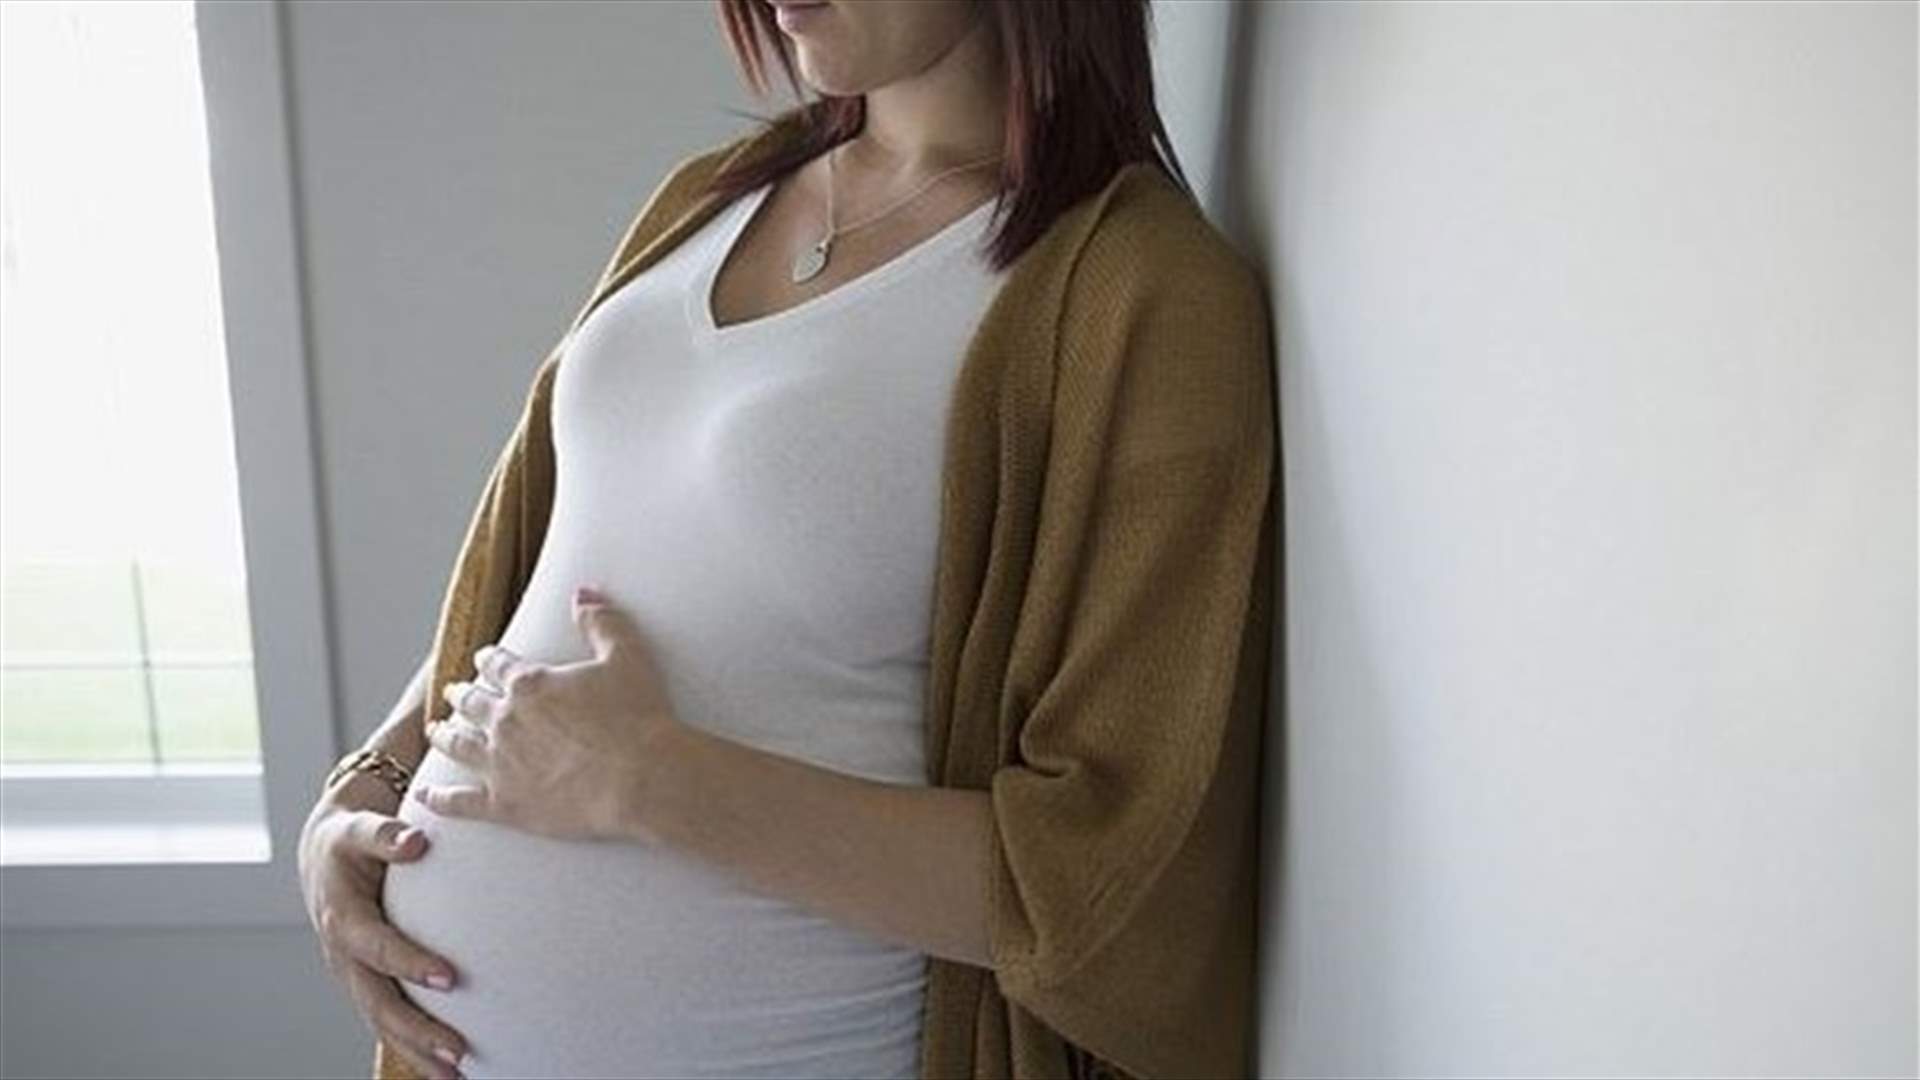  ممارسة الجنس بانتظام تحمي الحامل من مشاكل صحية